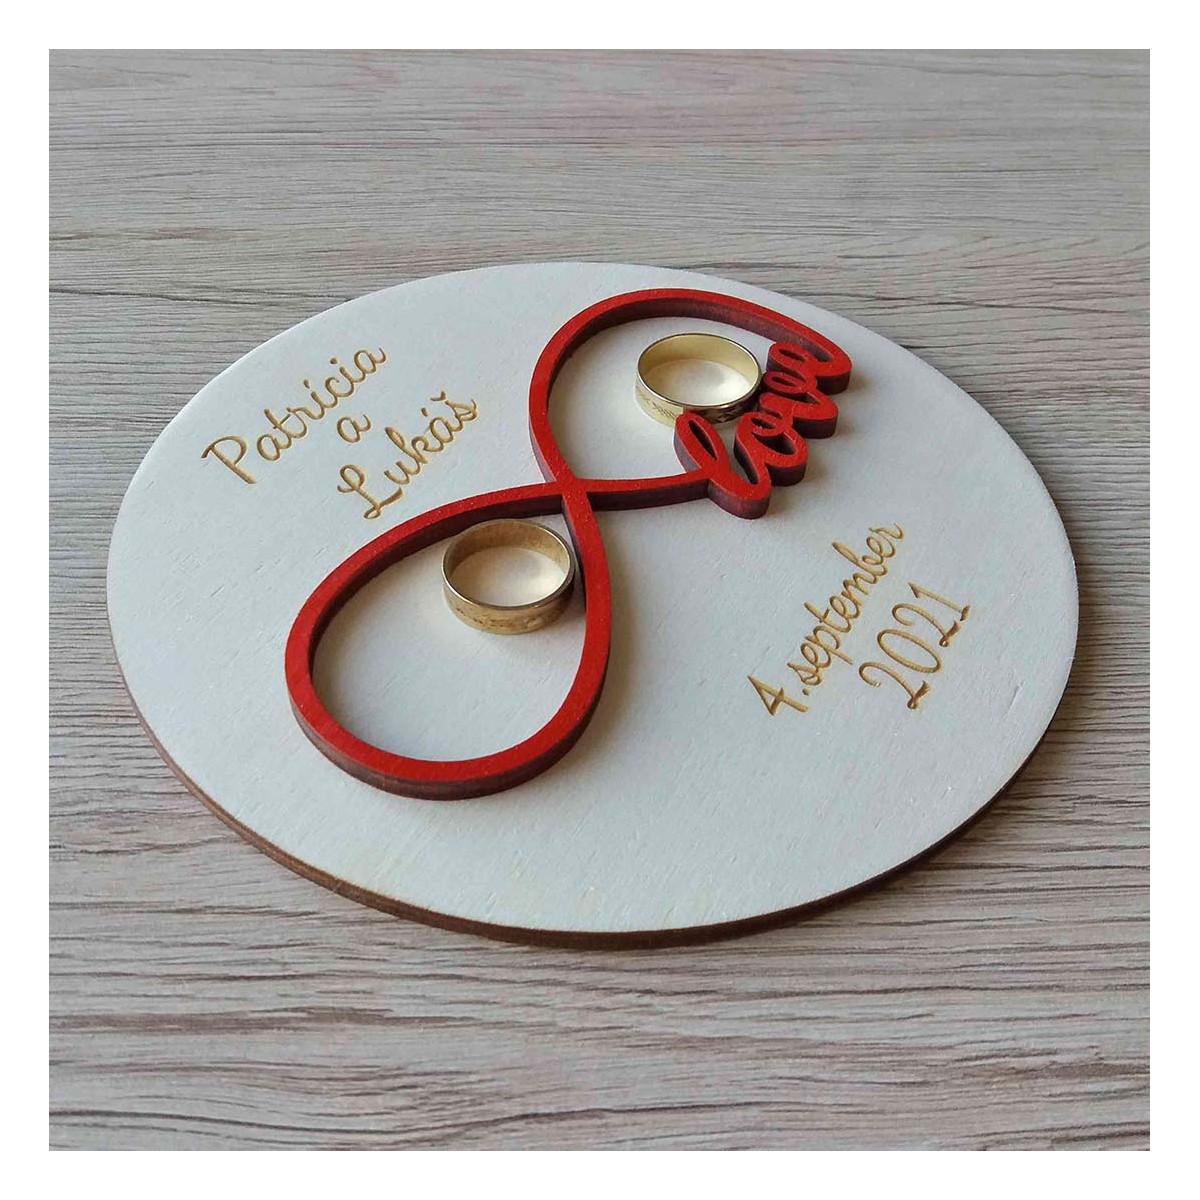 Drevený svadobný tanierik na obrúčky v tvare kruhu s výrezom nekonečnej lásky v červenej farbe a gravírovaným textom